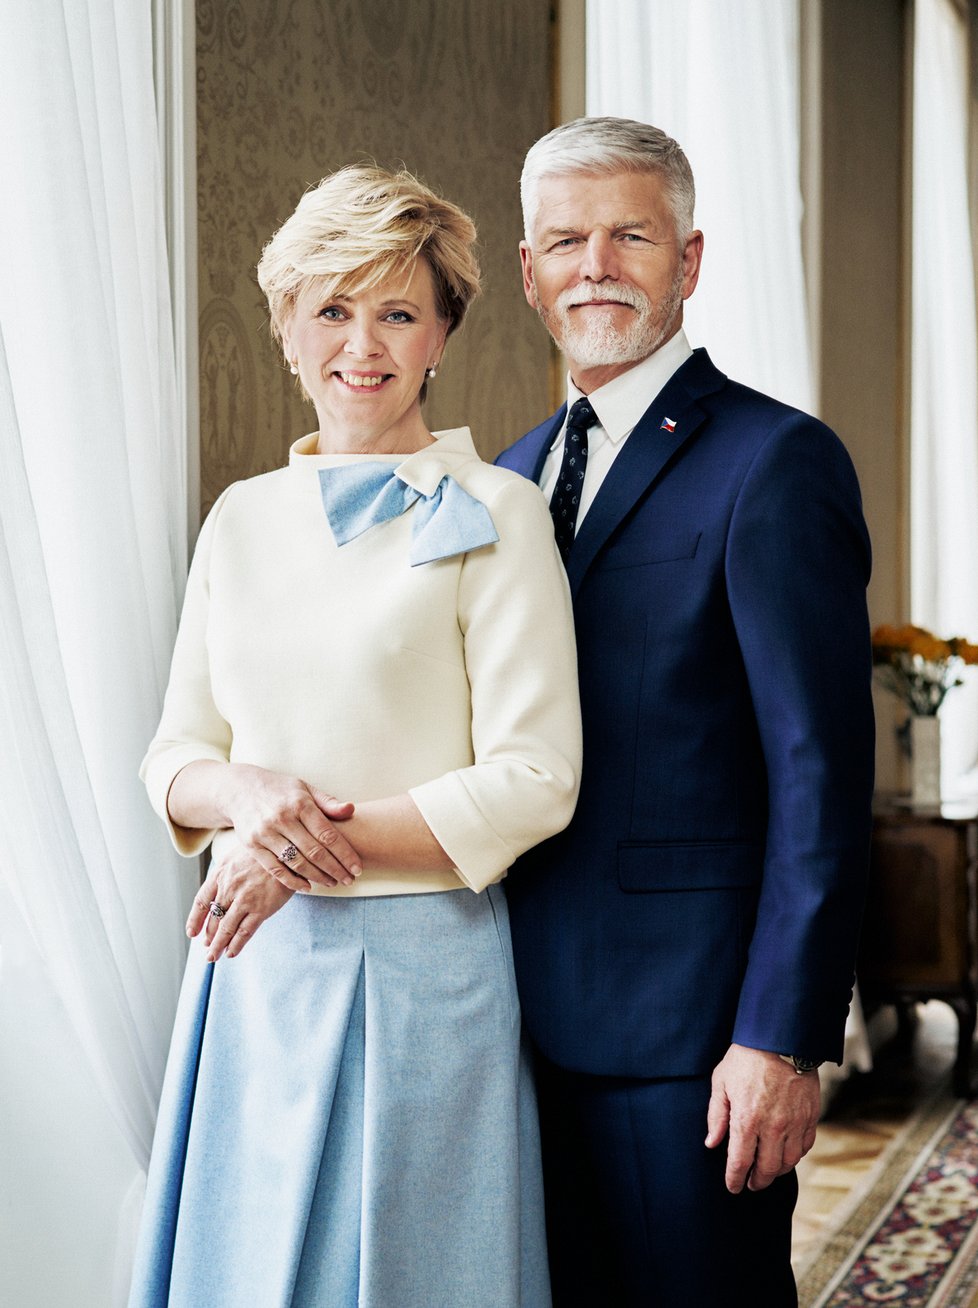 Oficiální portrét prezidenta Petra Pavla s manželkou Evou.